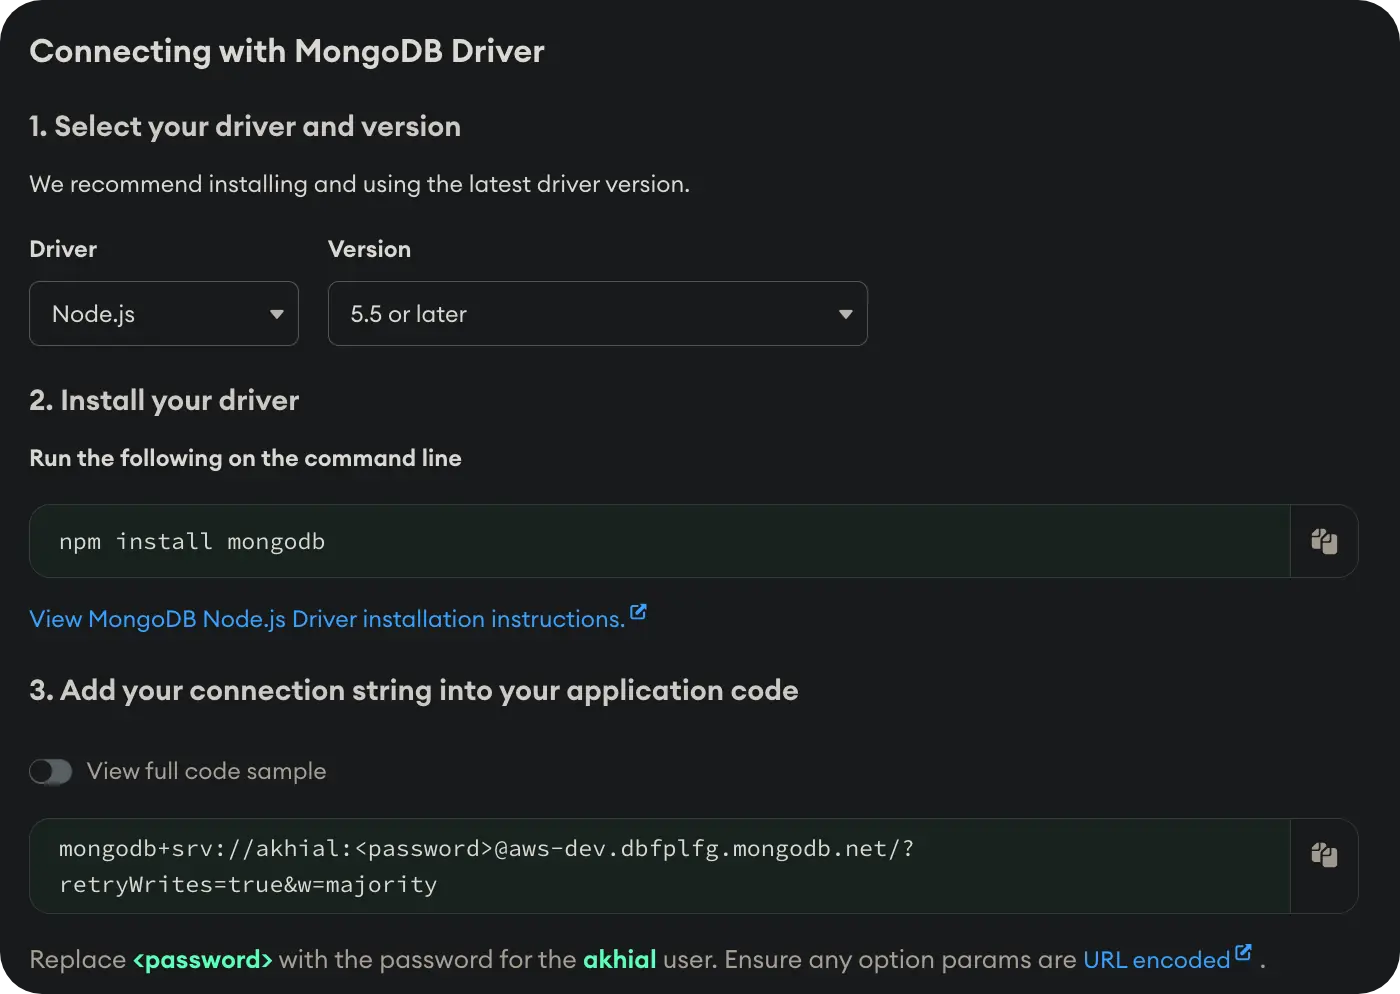 MongoDB Atlas - Connecting with MongoDB Driver